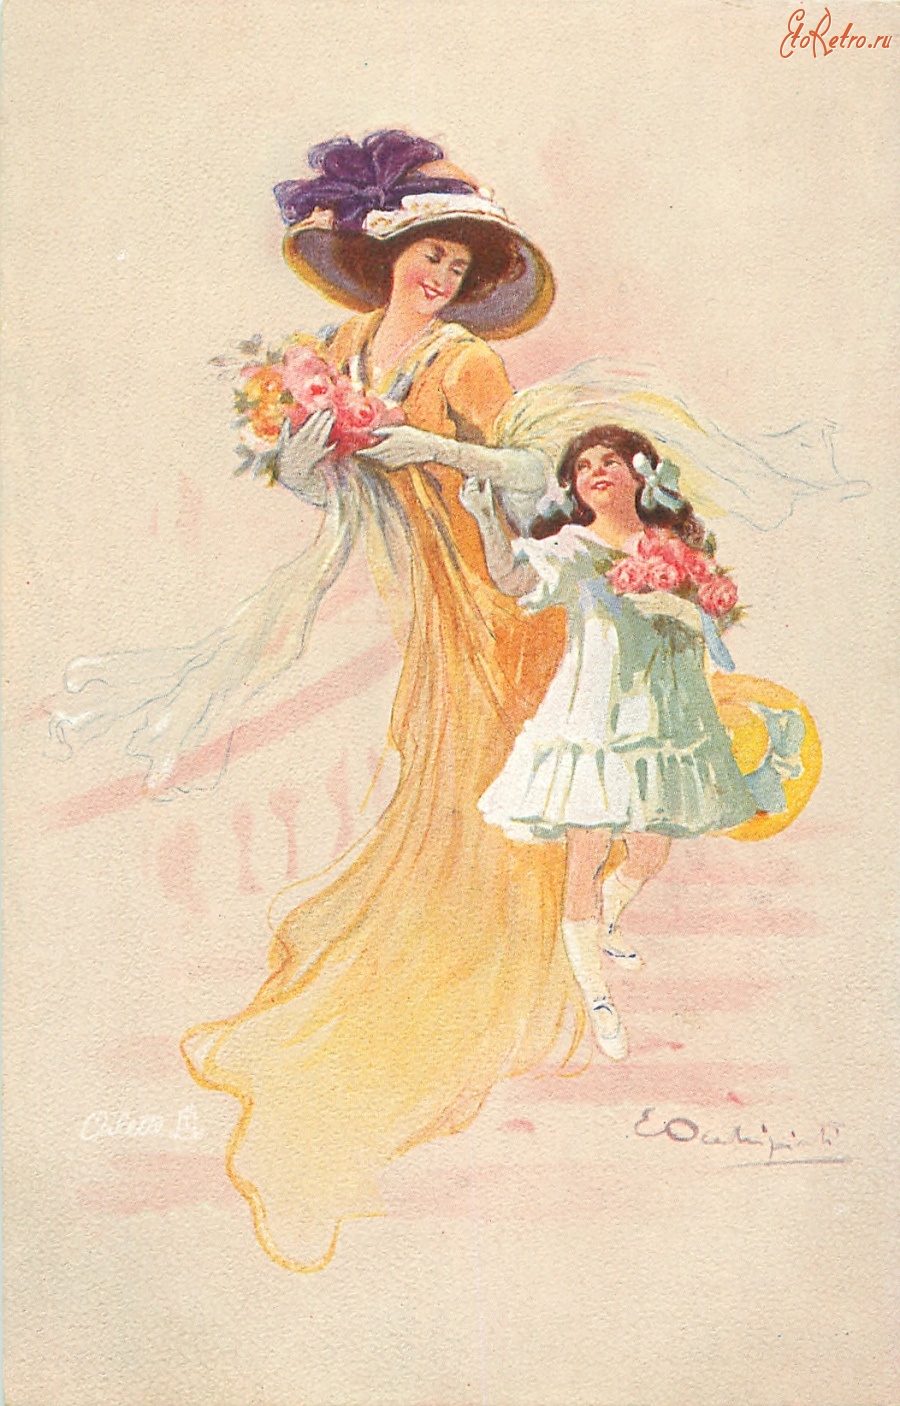 Ретро открытки - Женщина и девочка в летних платьях с букетами цветов